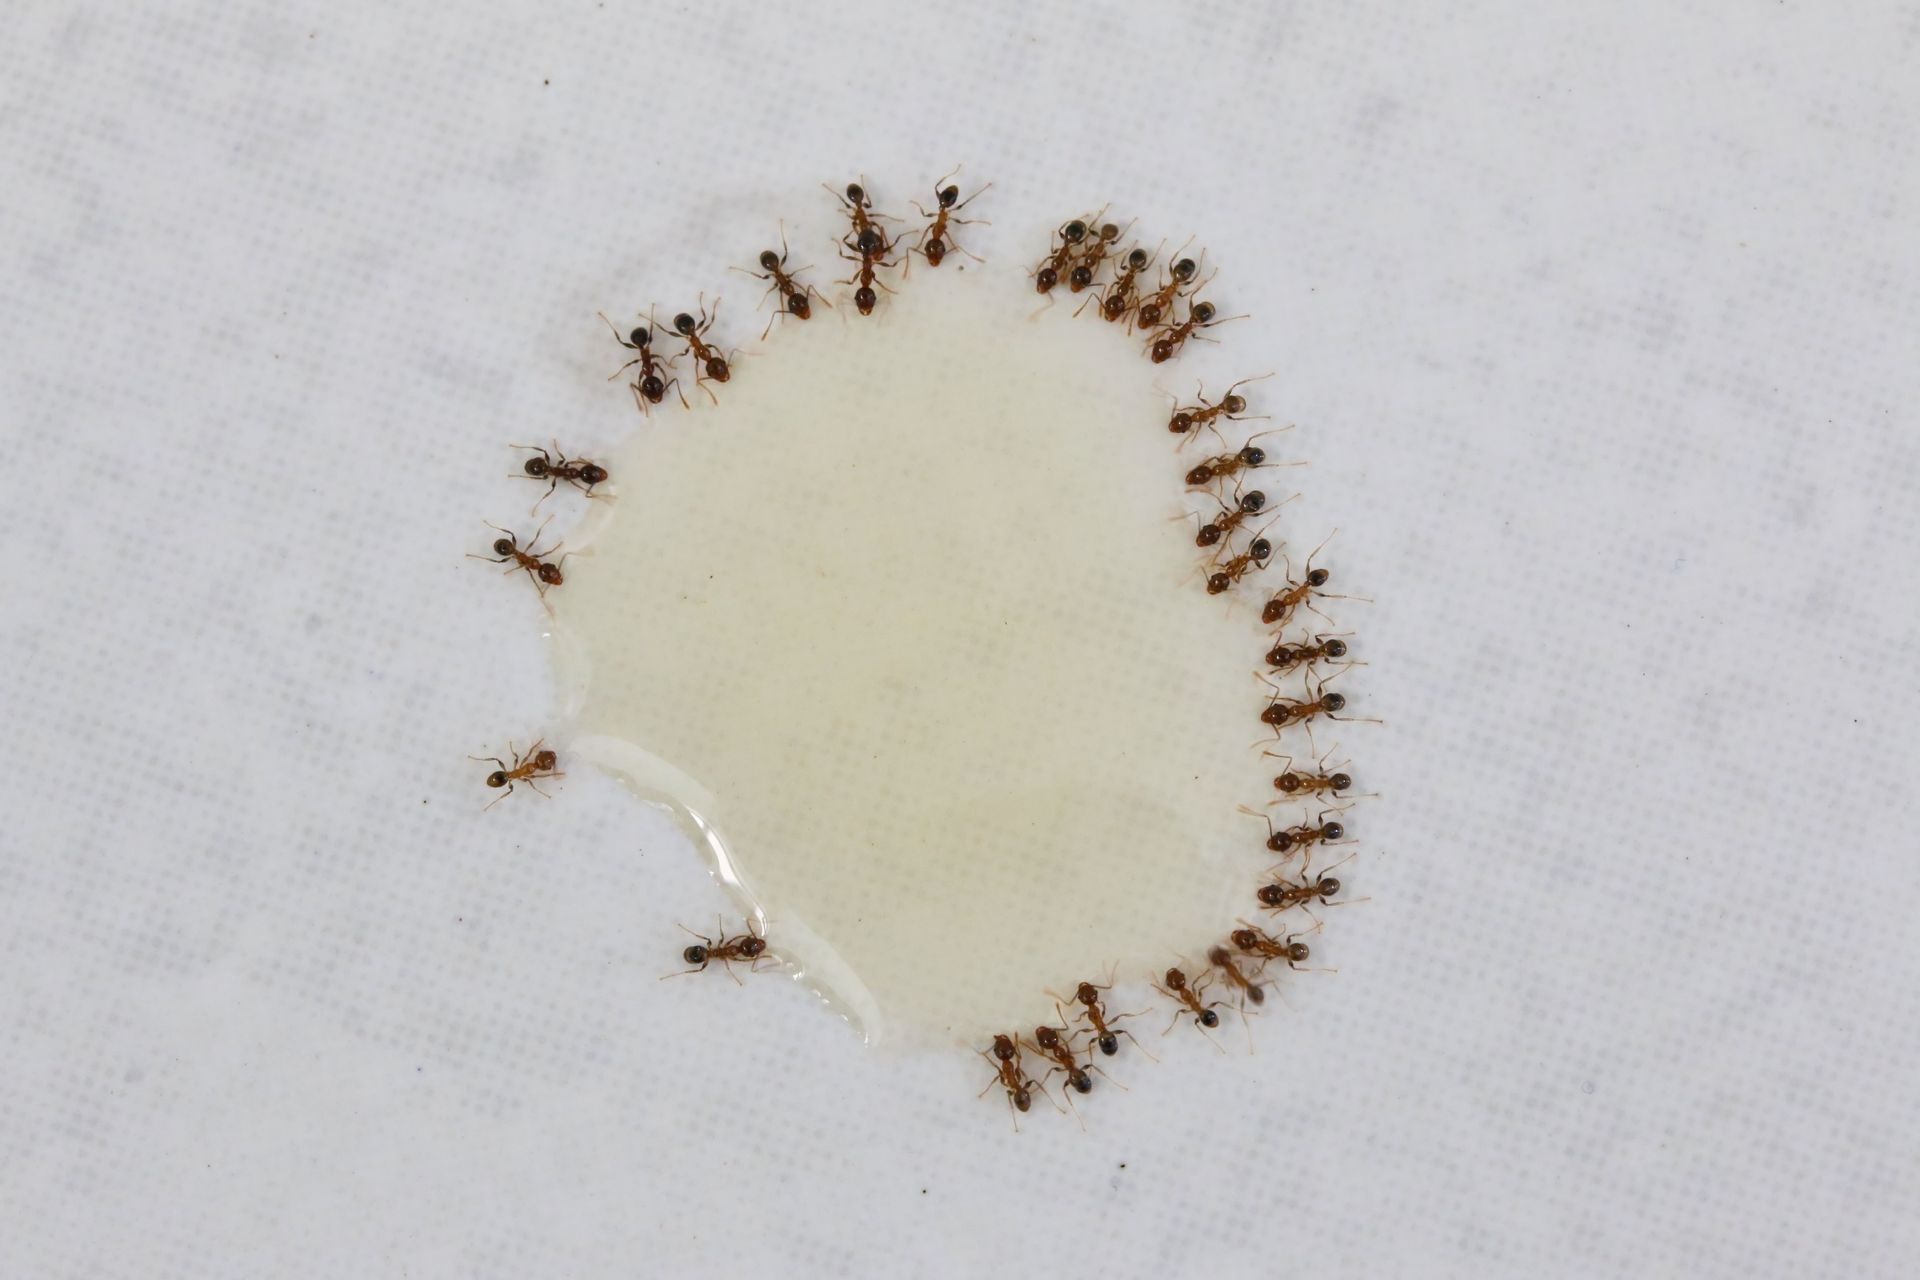 Des fourmis en cercle autour d'une goutte de gel